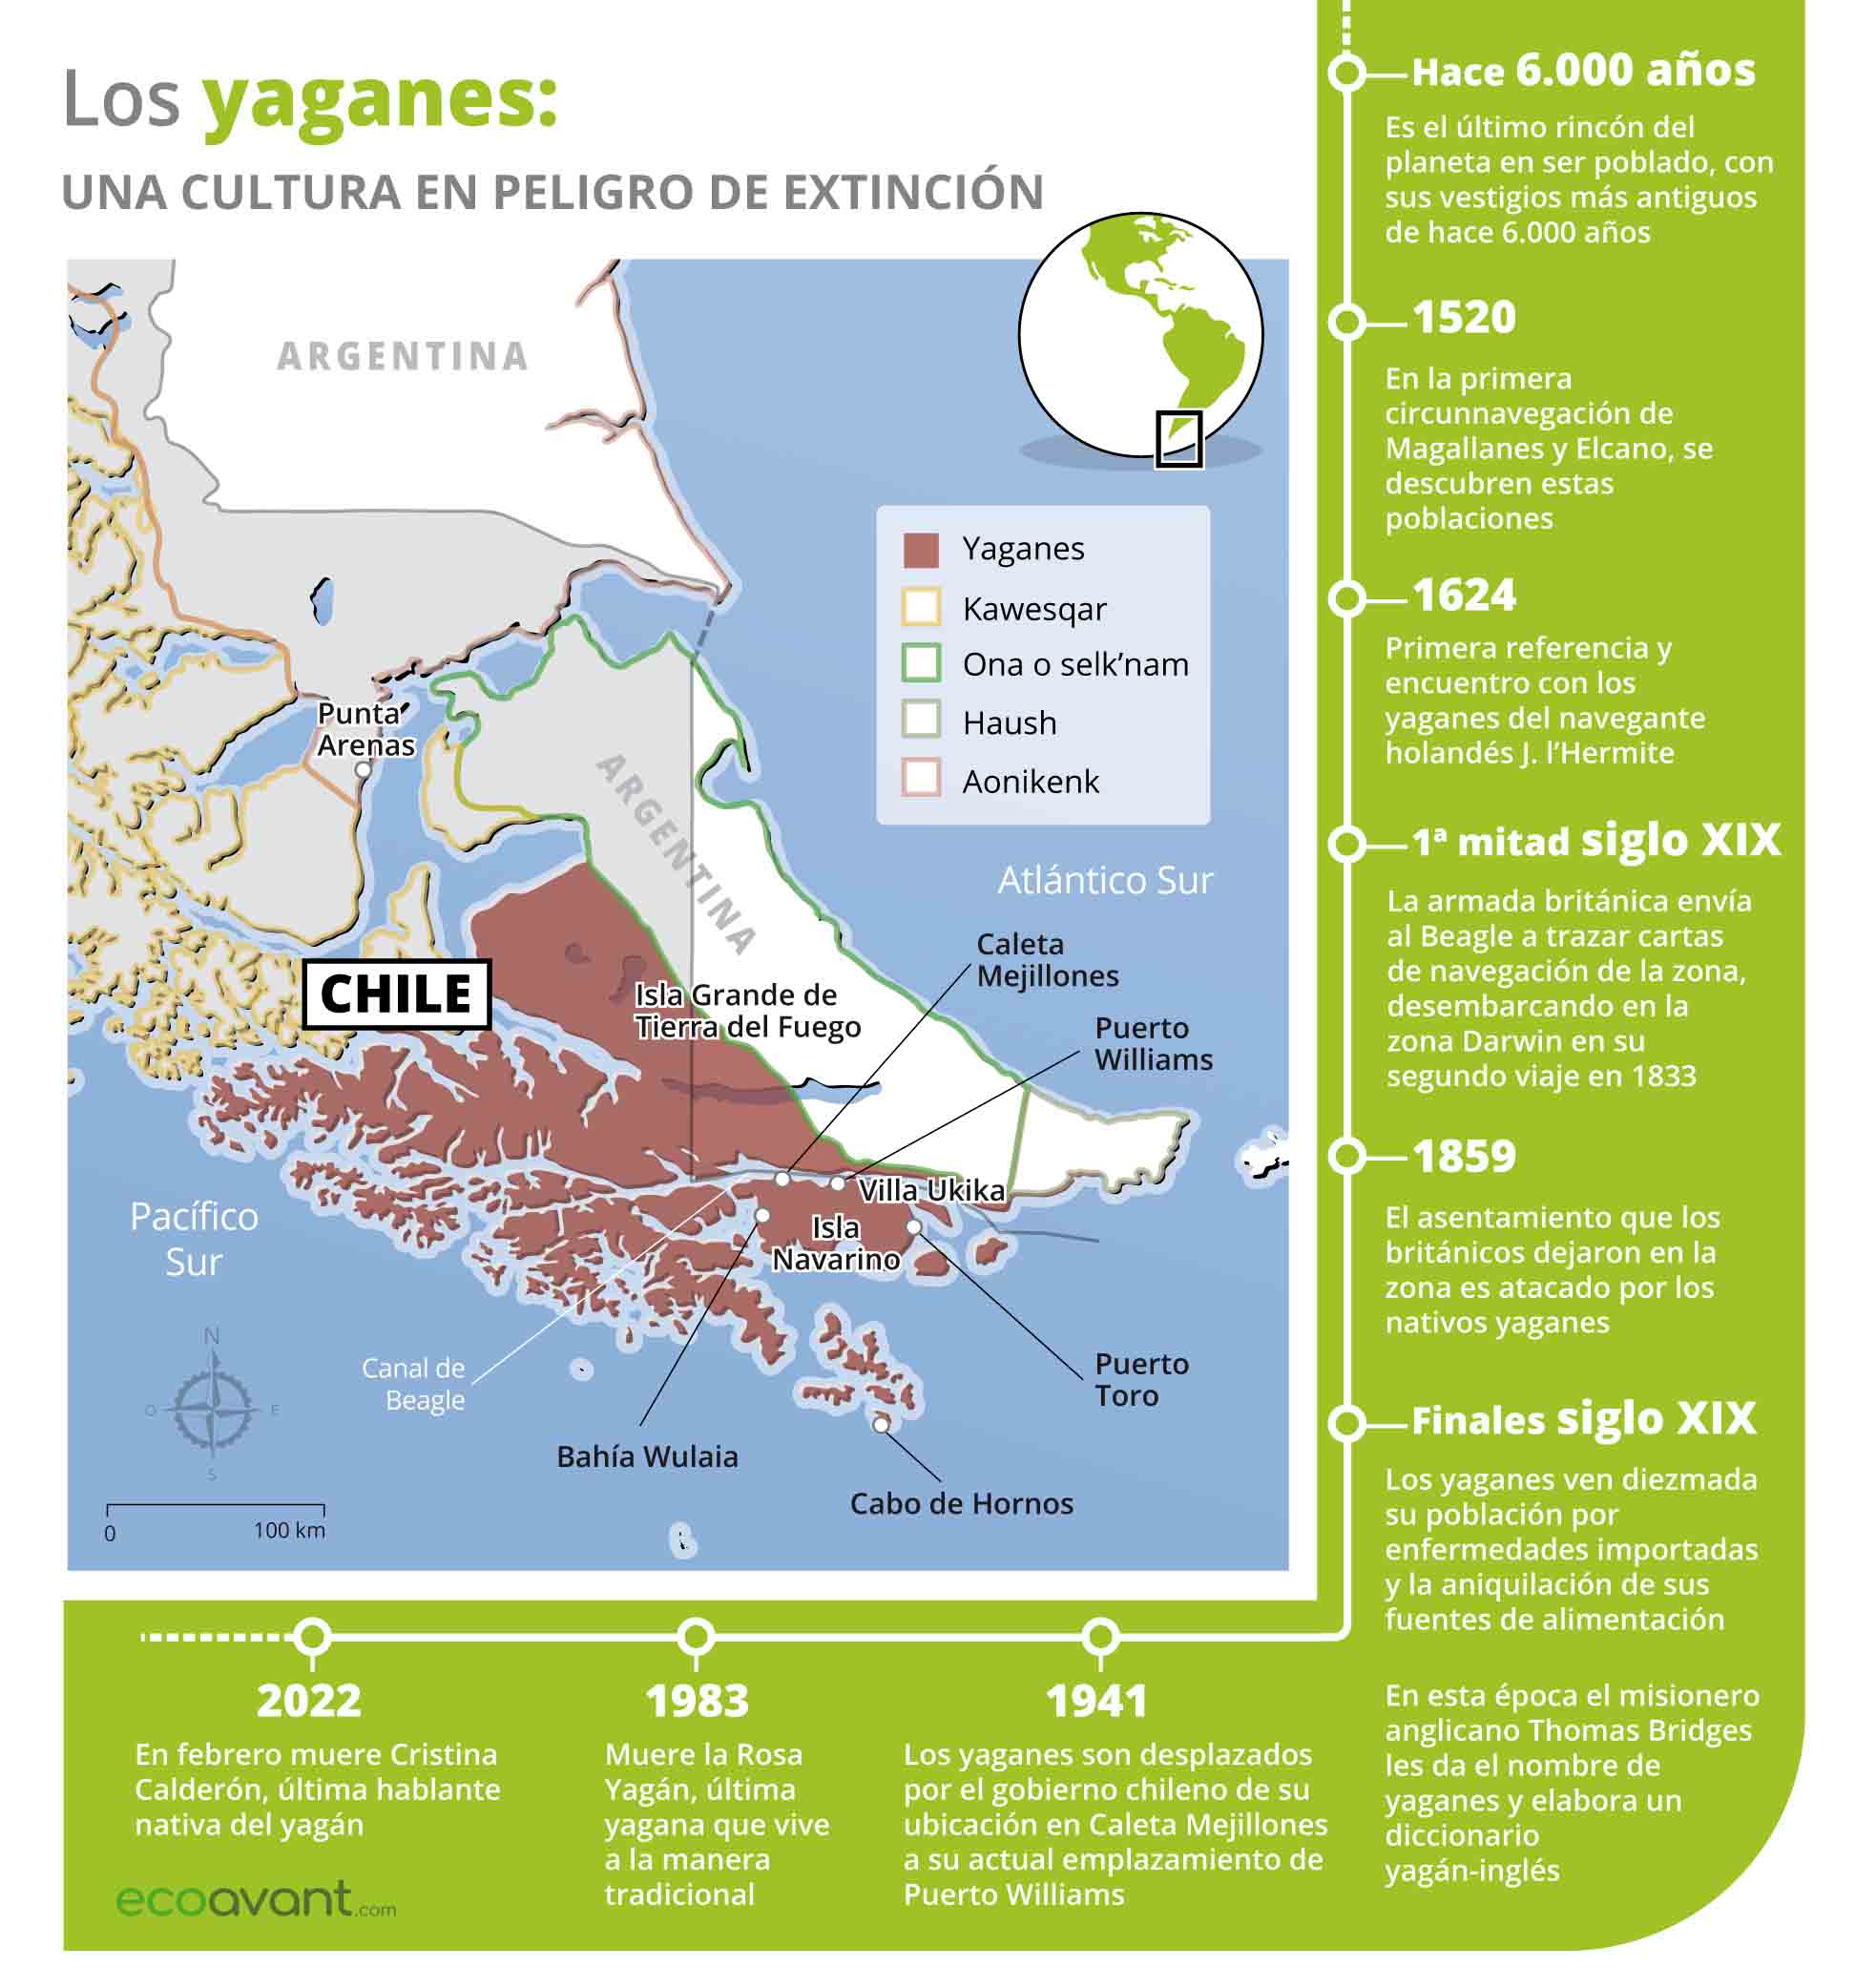 Los gayanes son una cultura en peligro de extinción / Infografía: EA